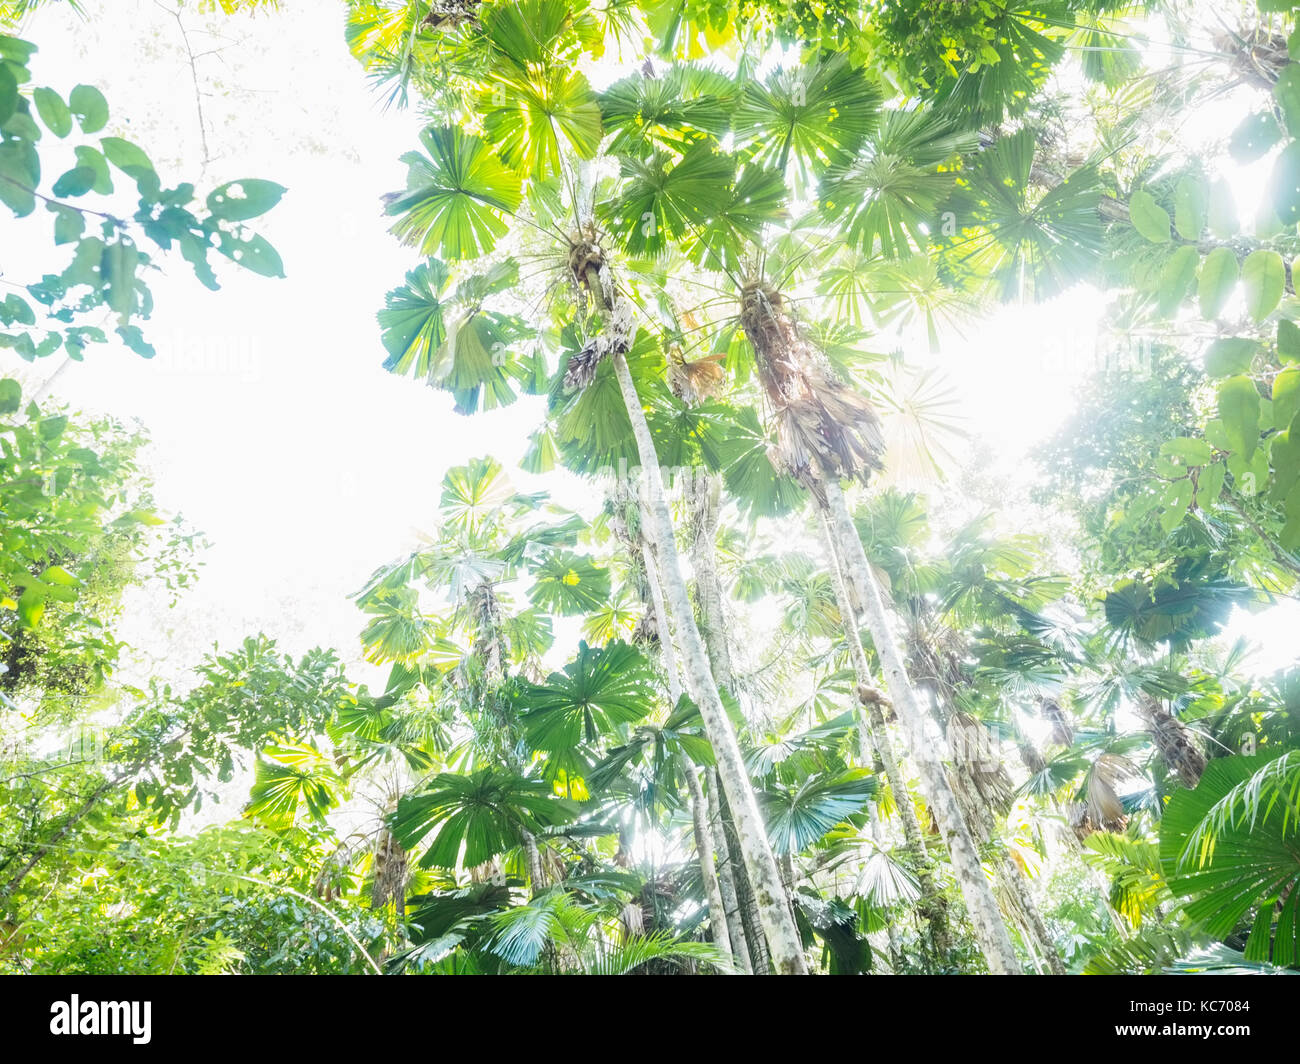 Lush foliage of Licuala grandis (Fan palm) Stock Photo